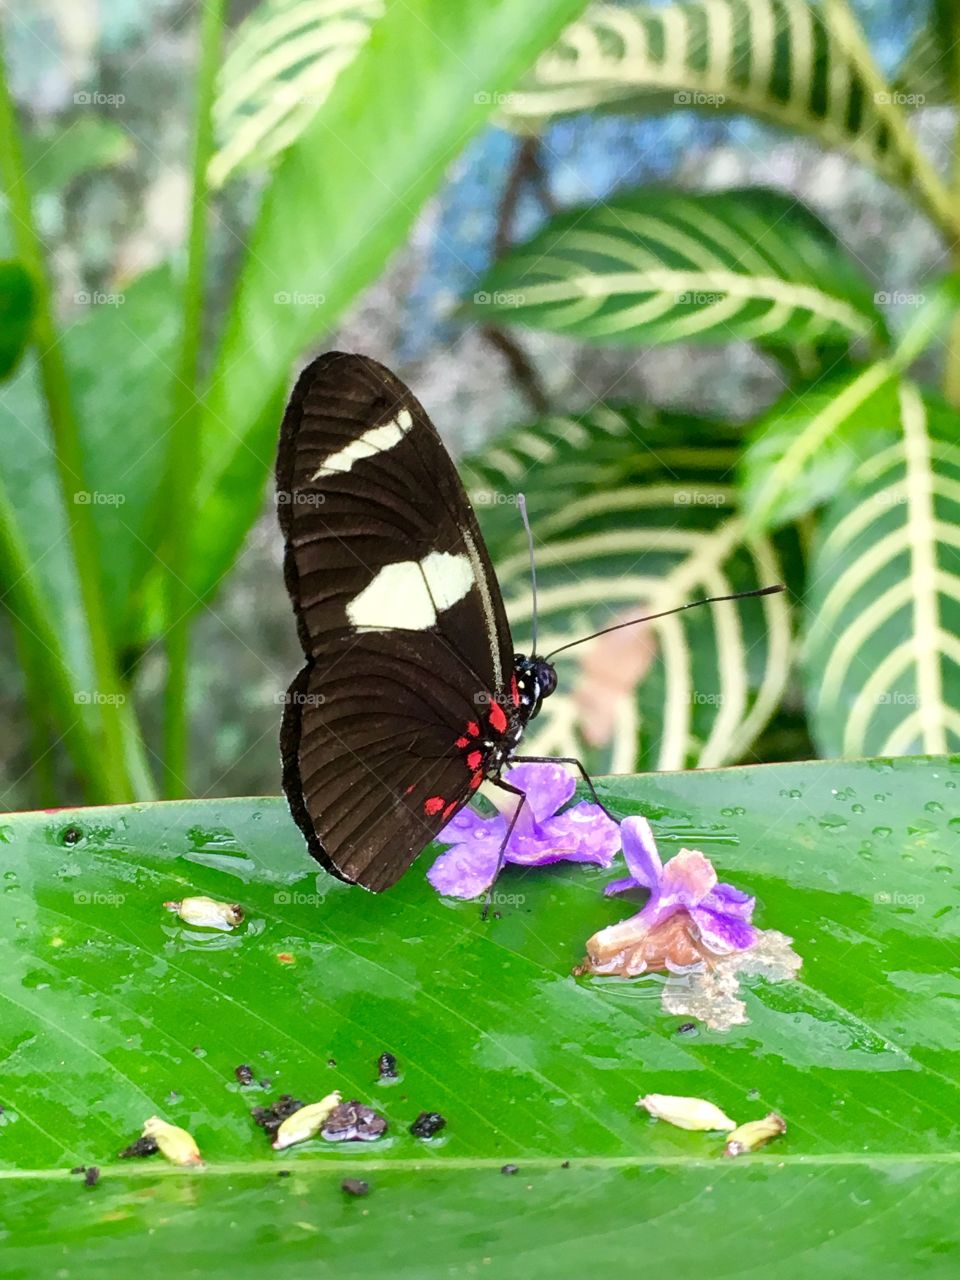 Feeding butterfly